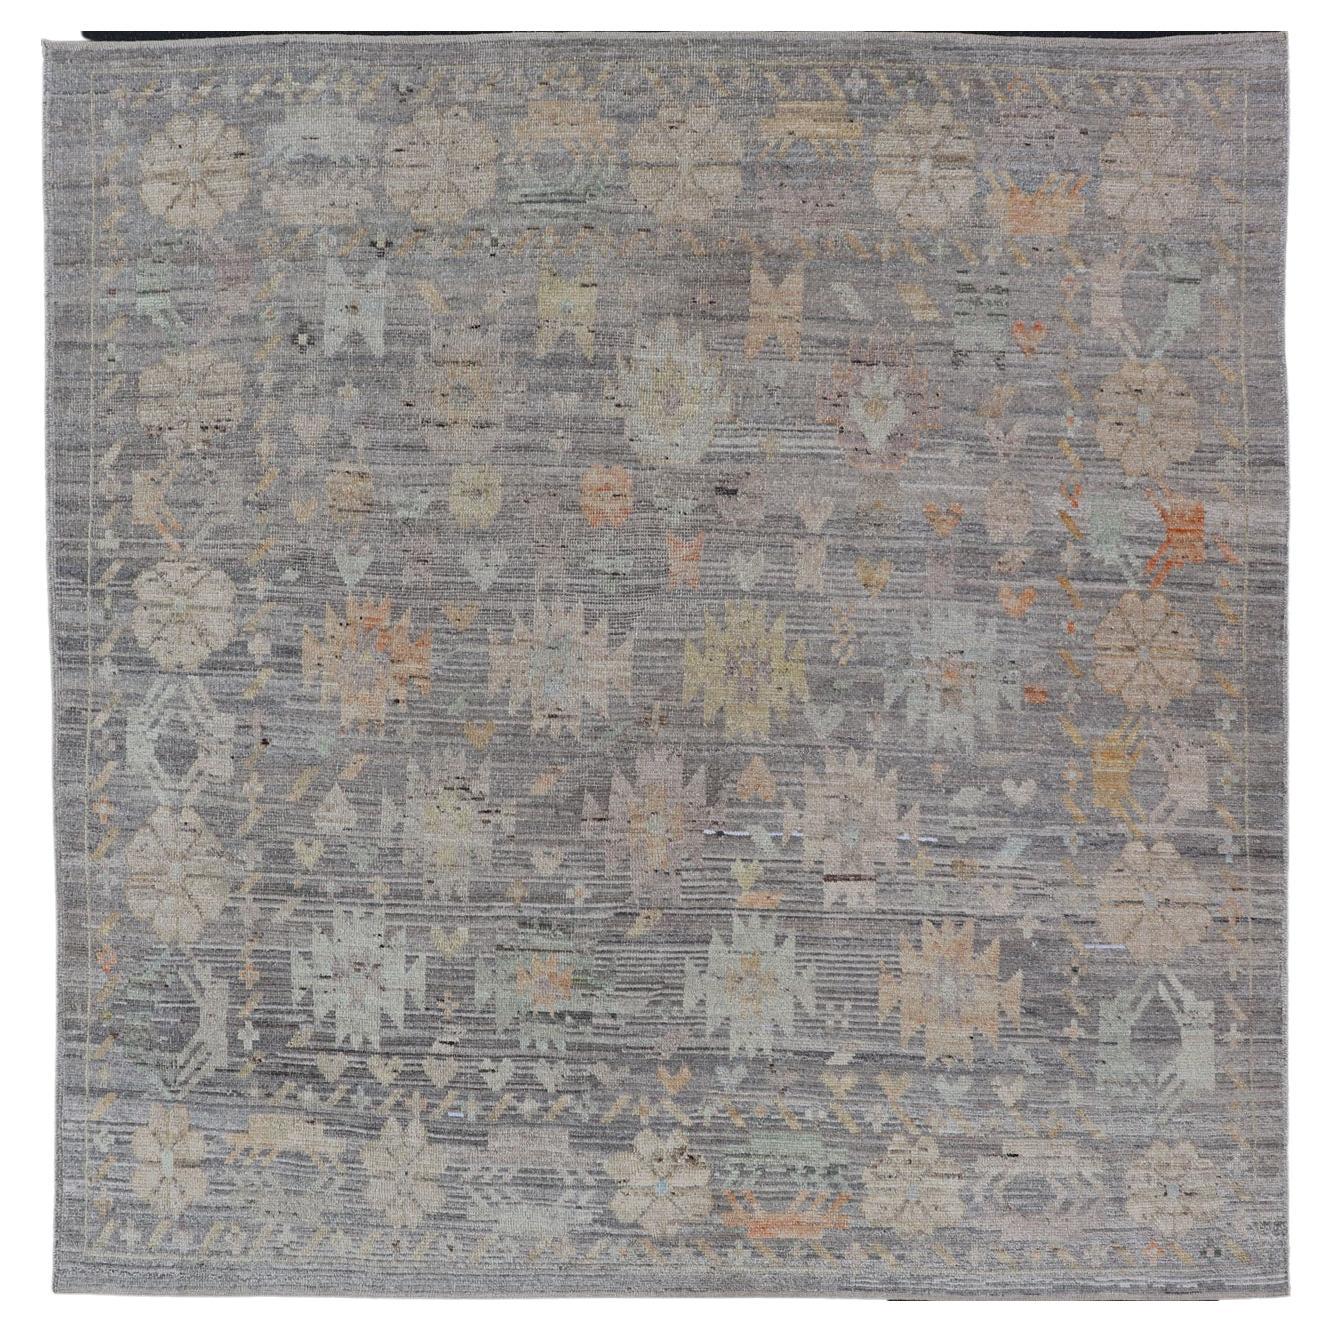 Moderner Teppich mit afghanischem Stammesmotiv in gedämpften Tönen und grauem Hintergrund